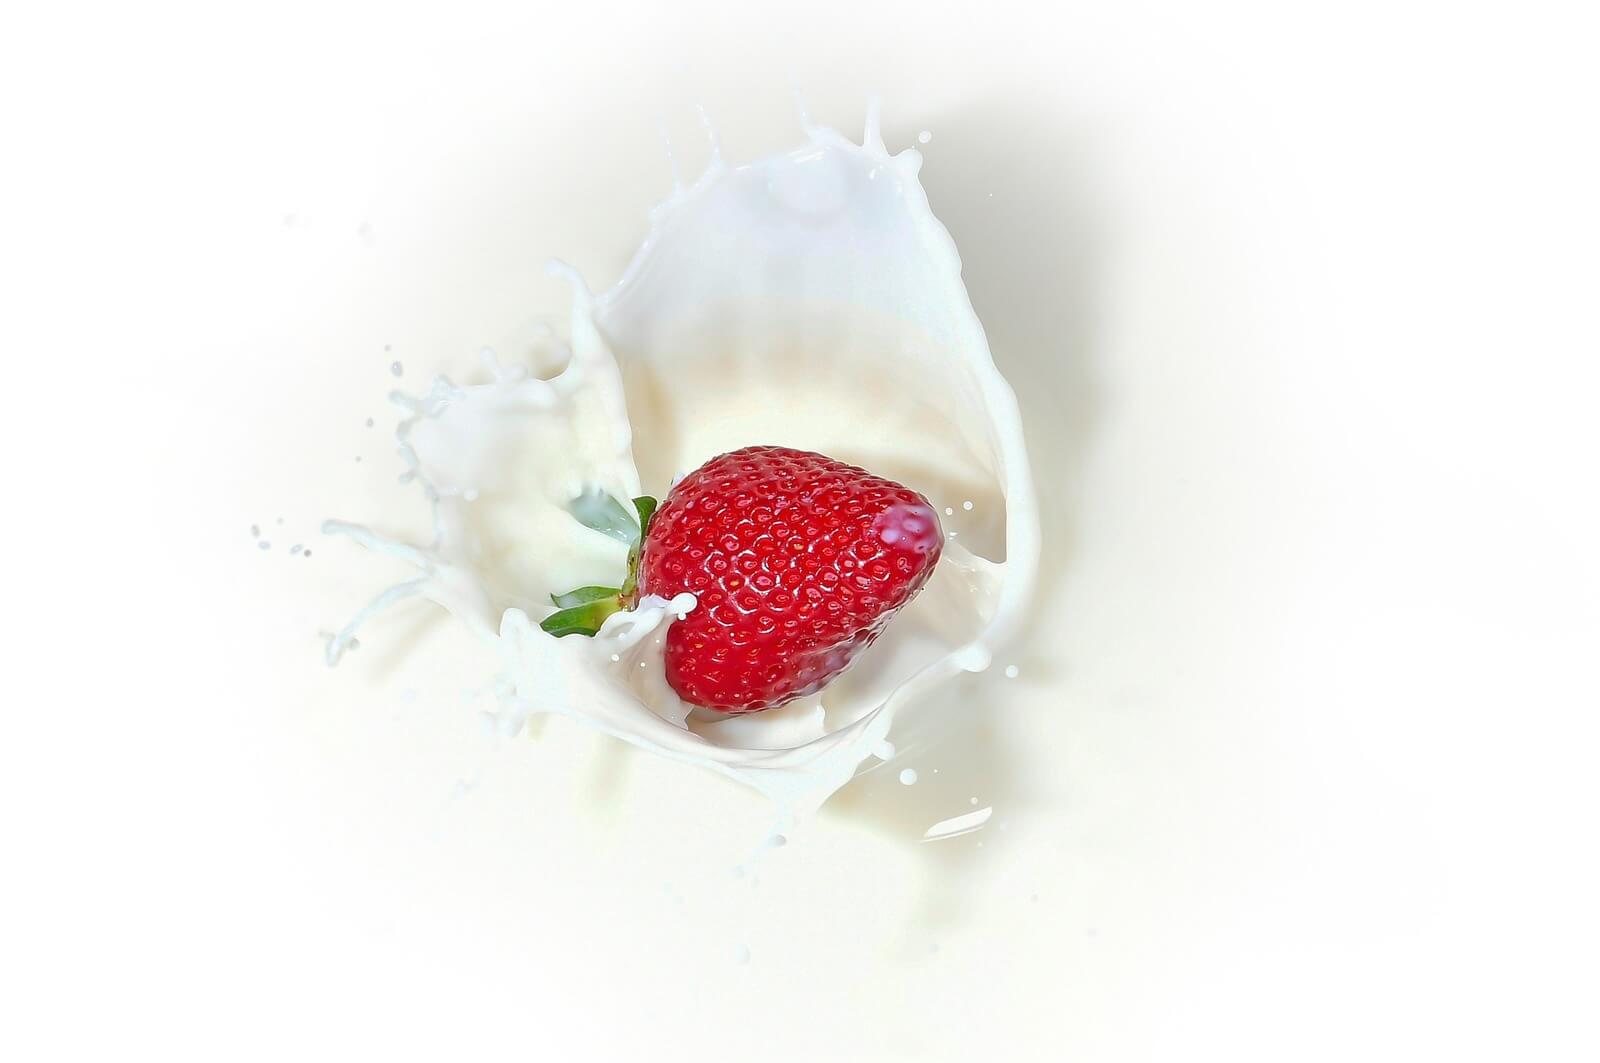 (已成交)Uniquely Created Yogurt Making, Distribution Cum Retail - Selling Below Asset Value 97498301